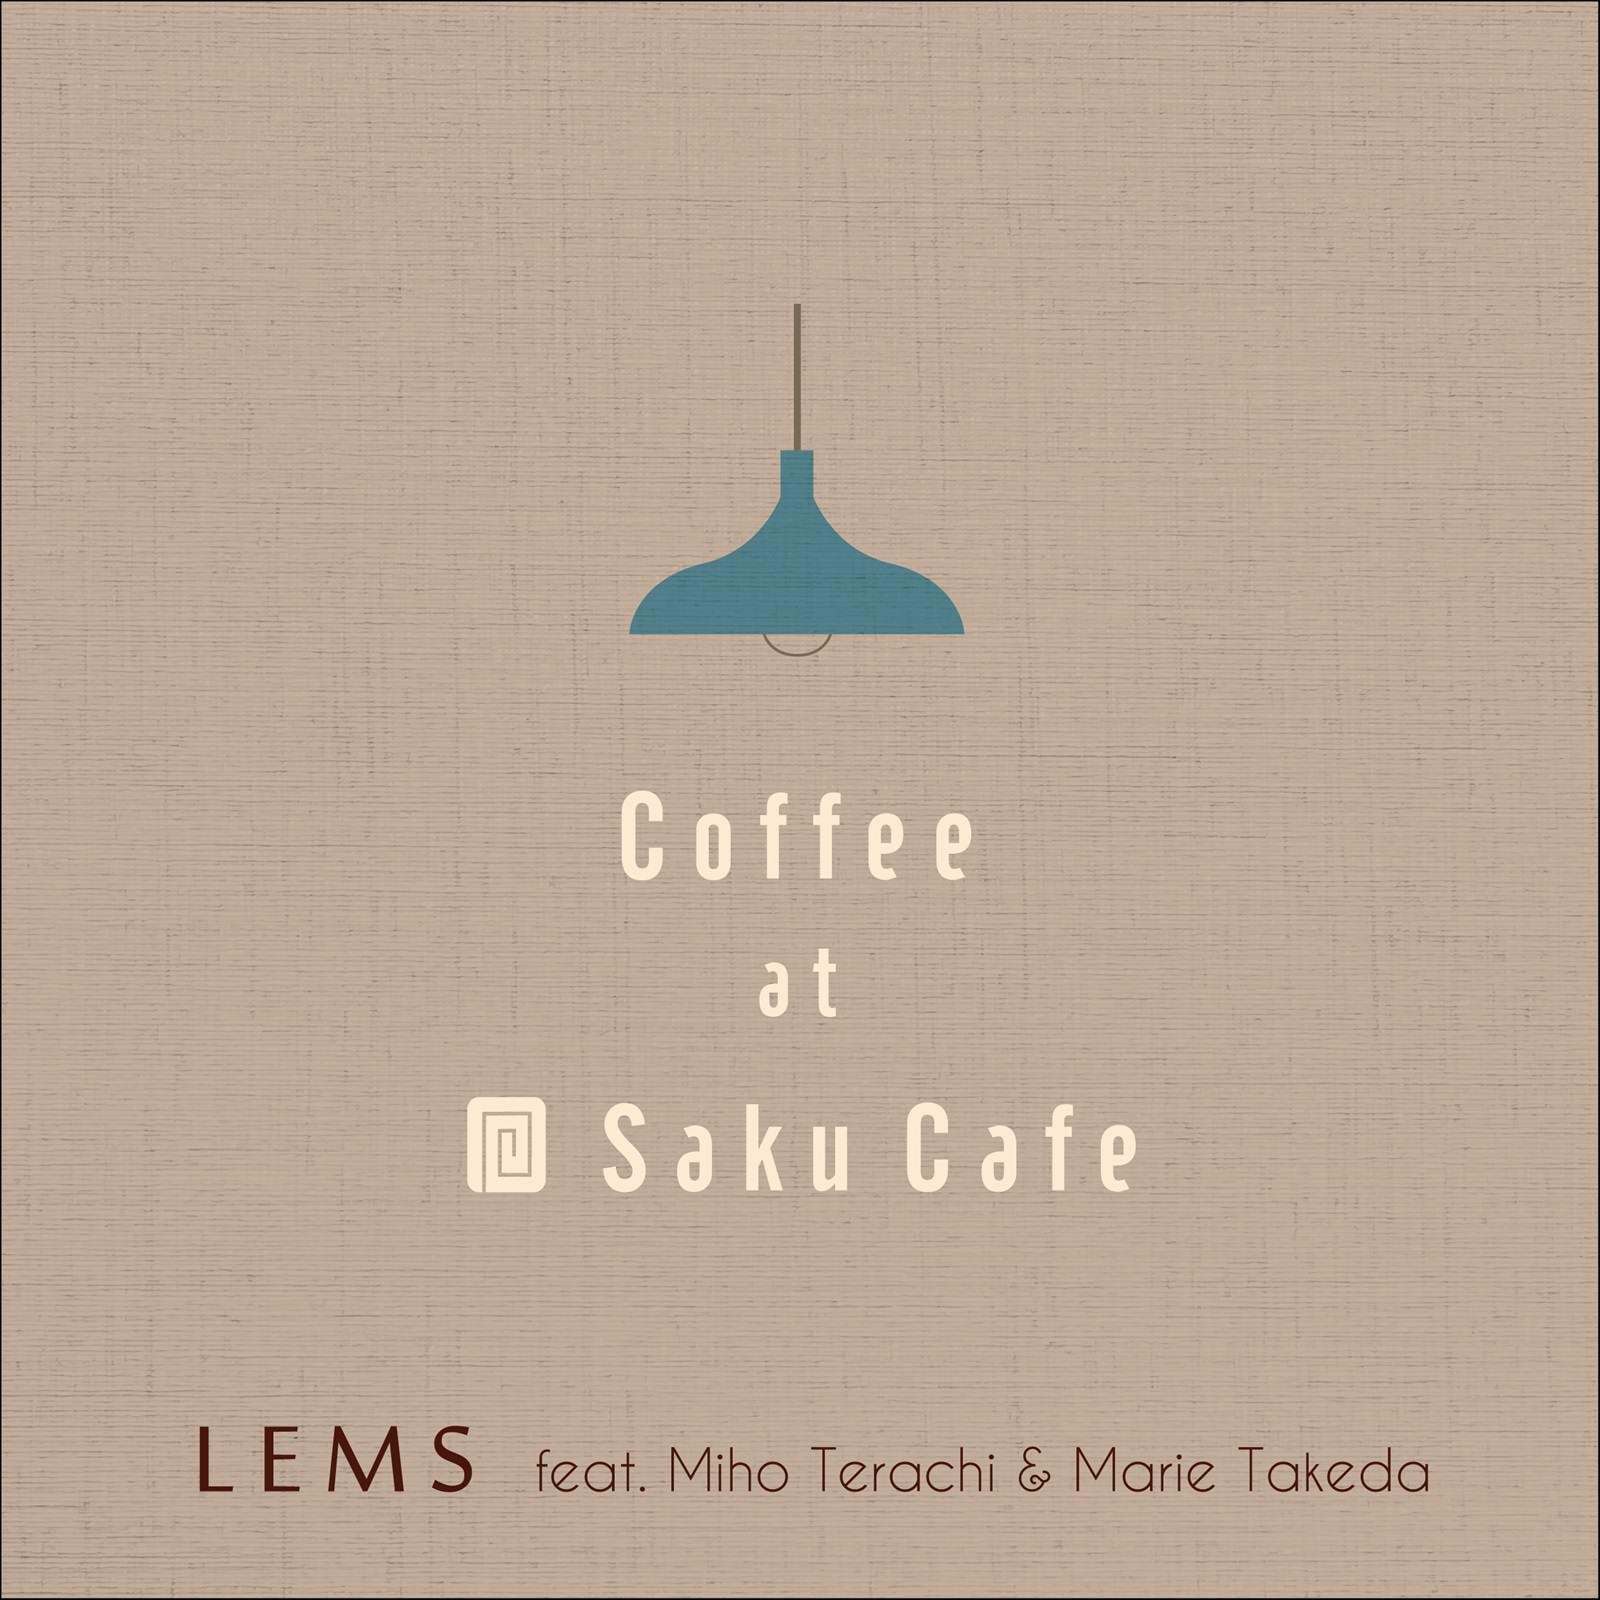 Coffee at Saku Cafe feat. Miho Terachi & Marie Takeda - LEMS